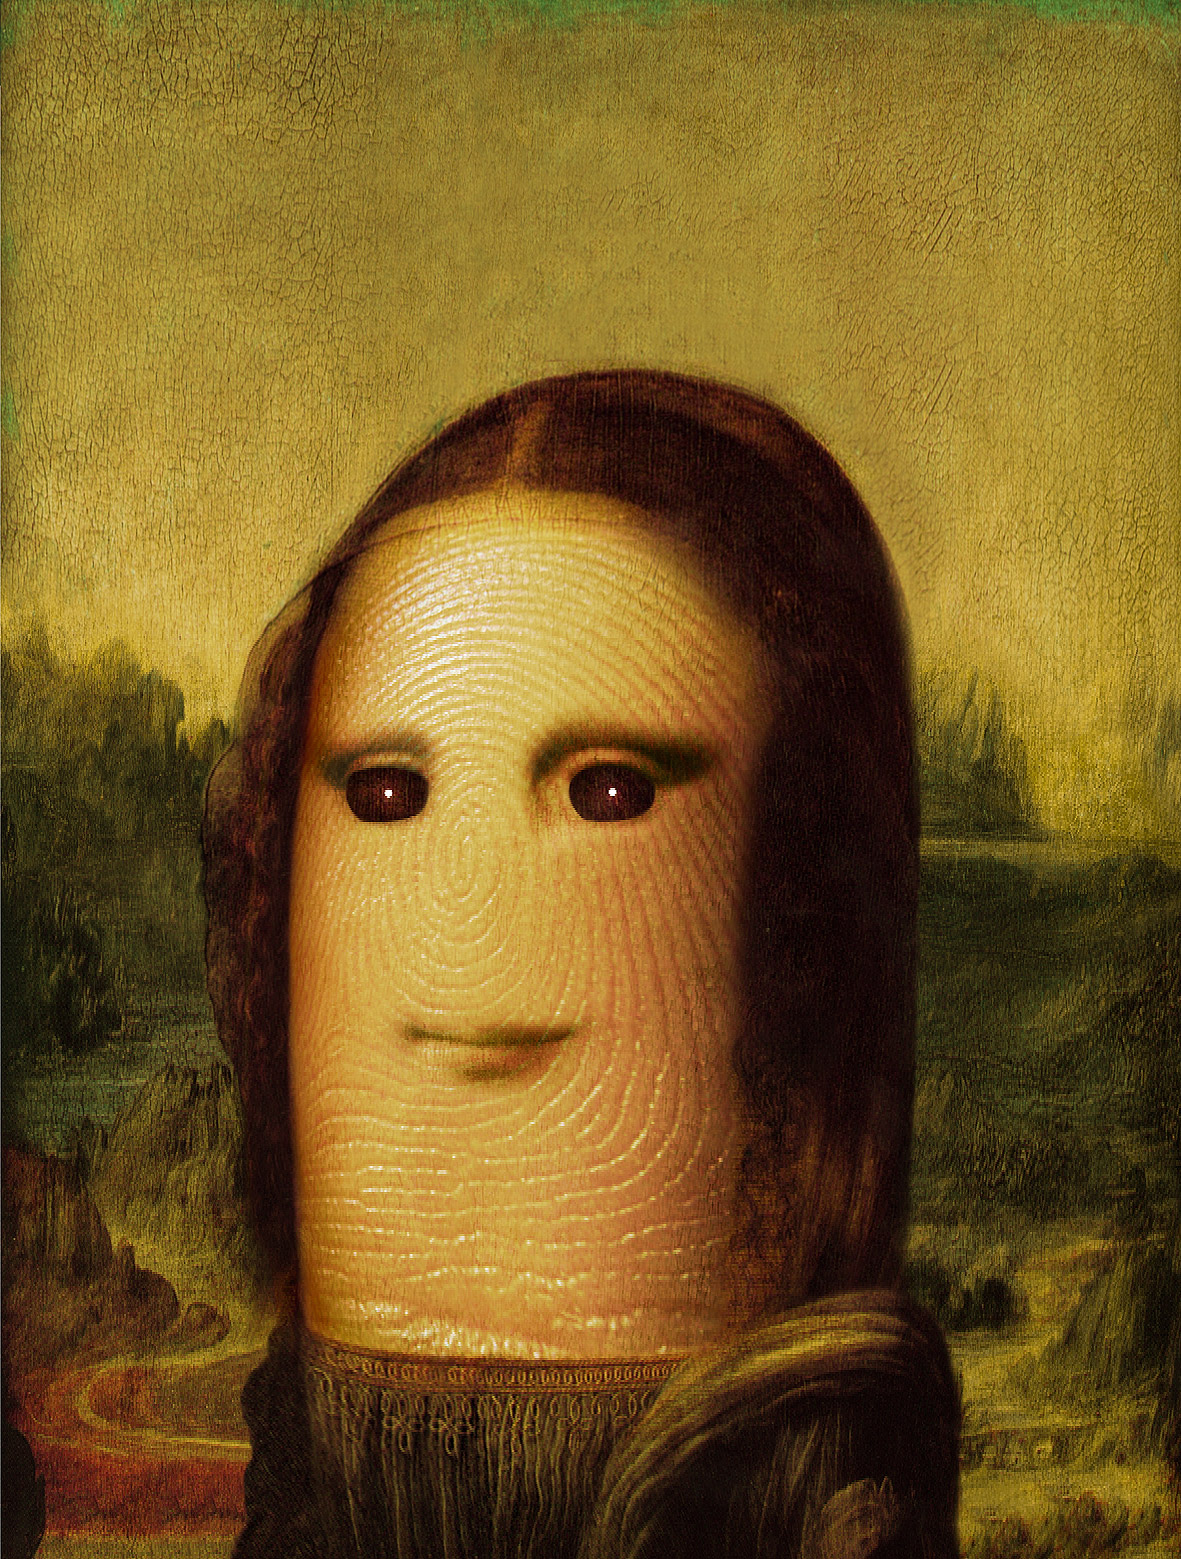 Pulgares célebres: La Mona Lisa